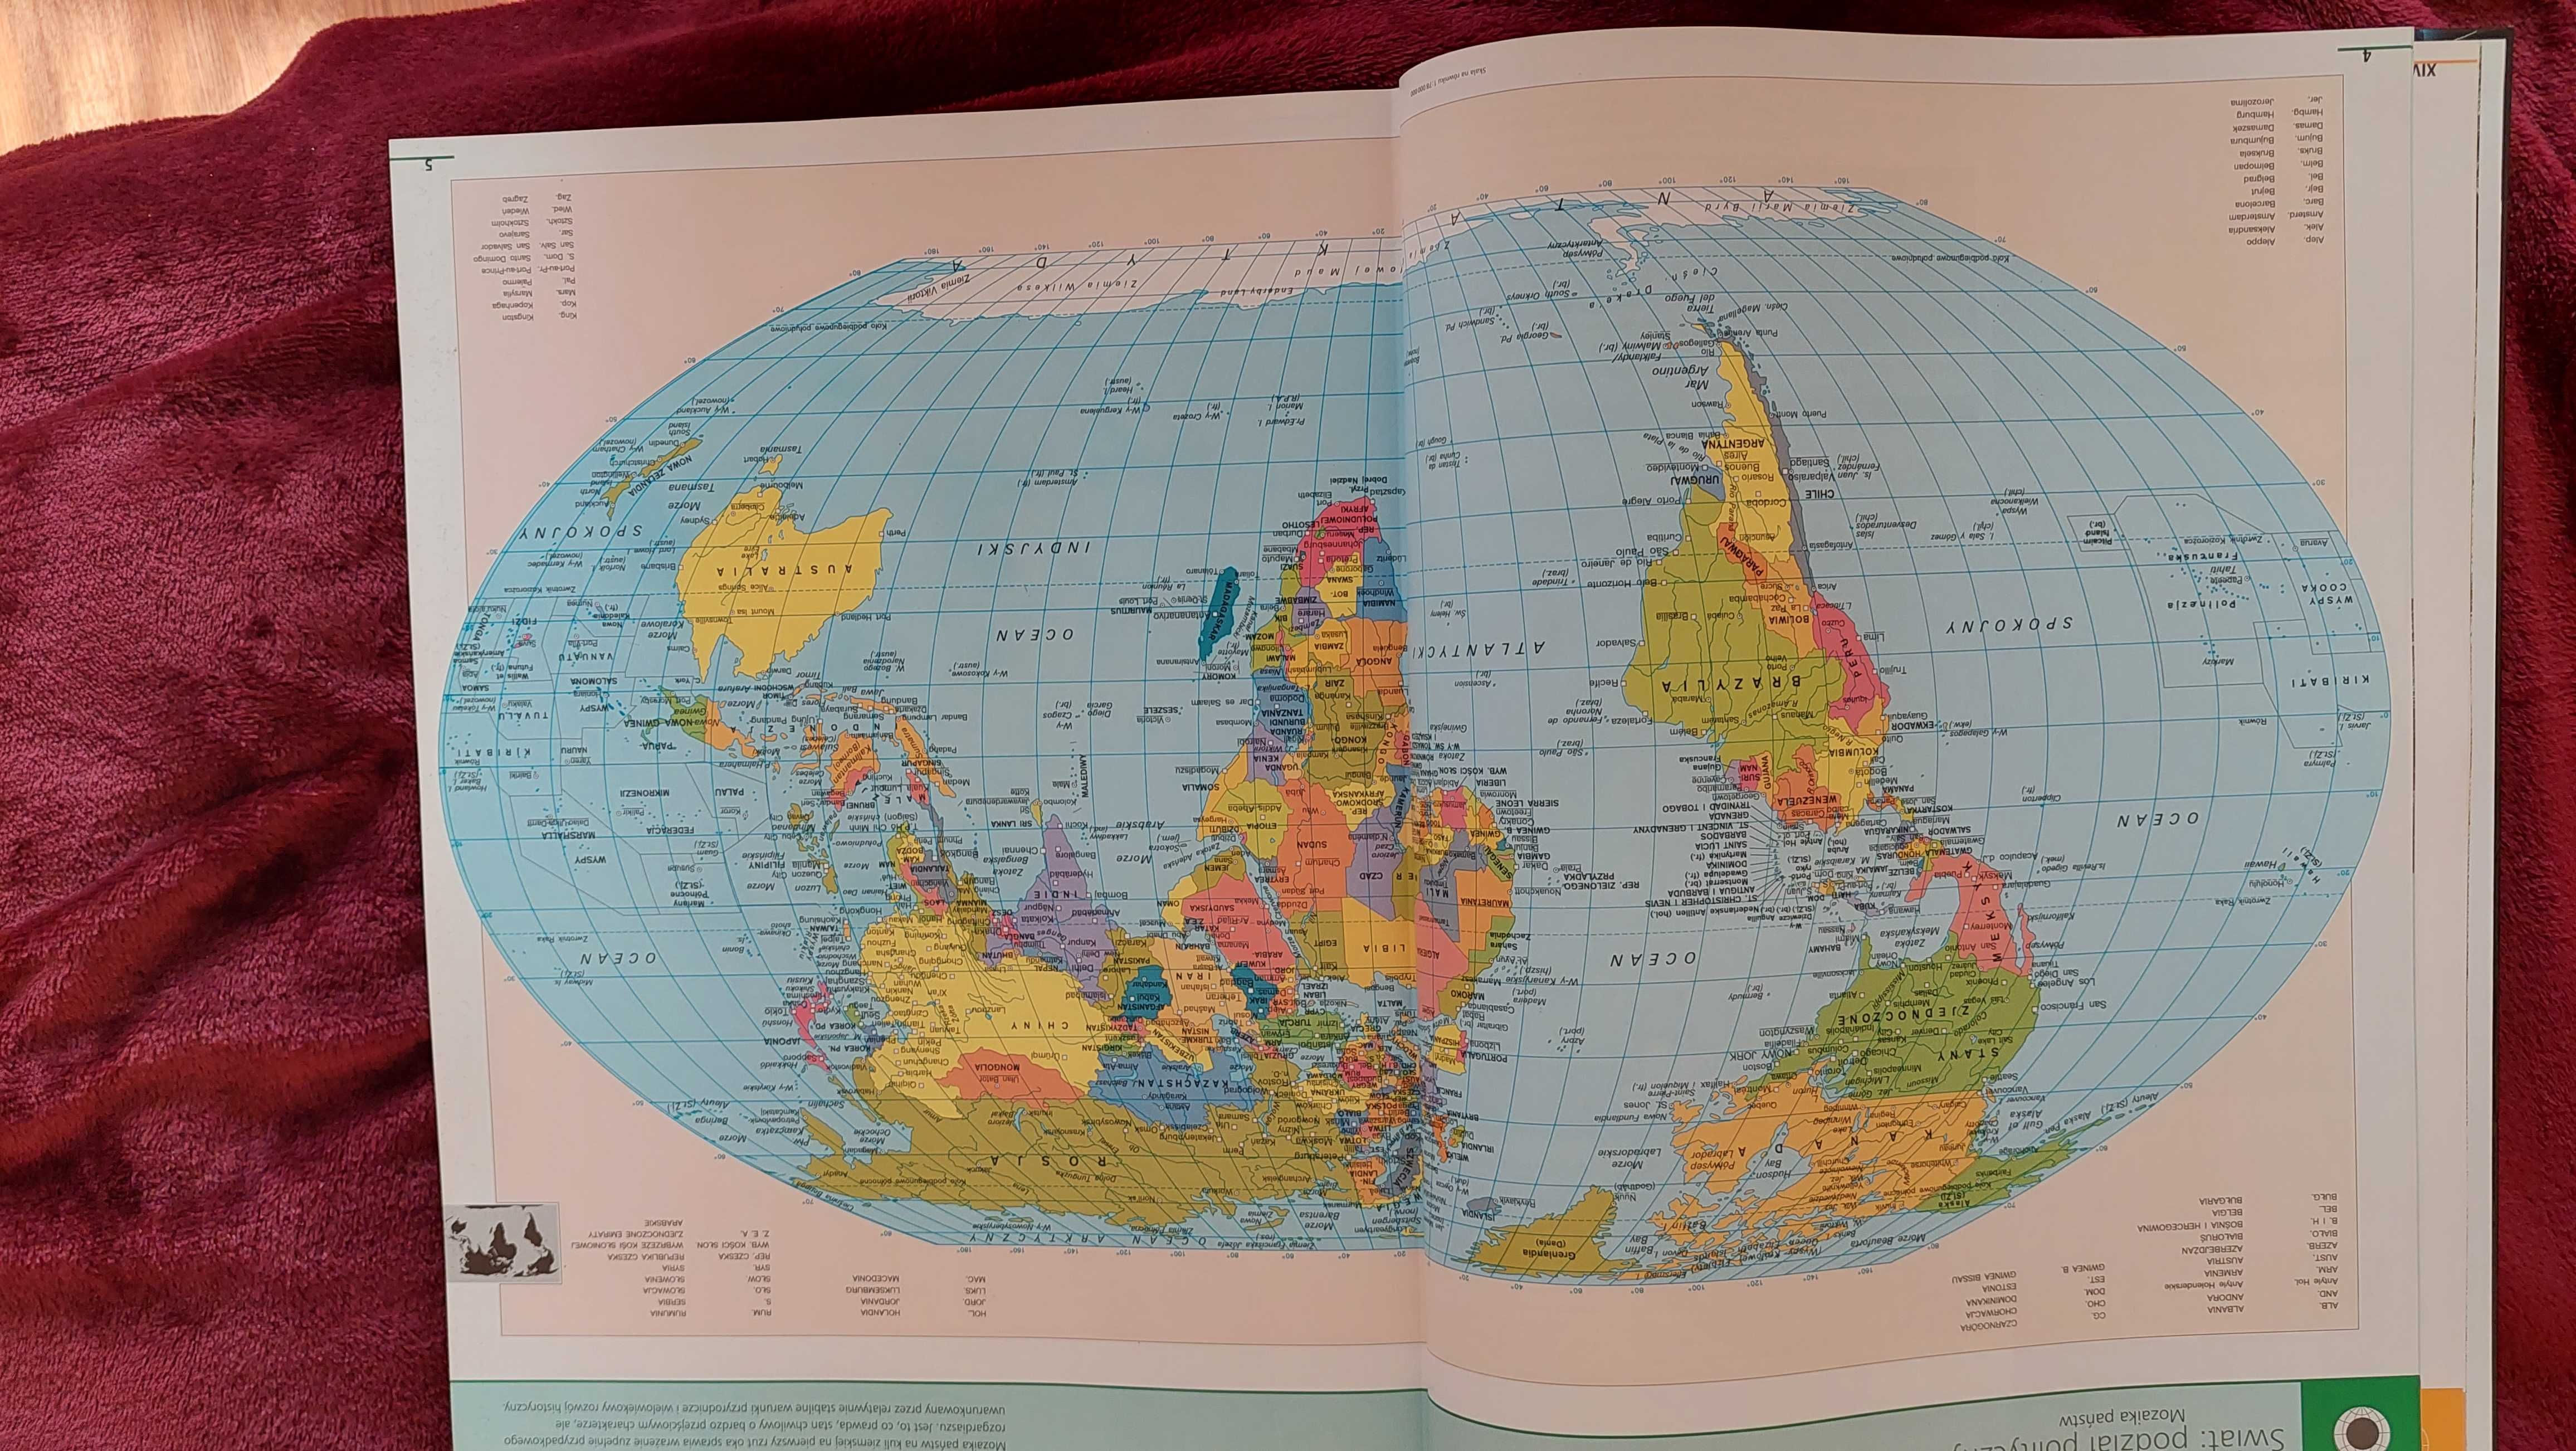 Wielki Atlas Świata